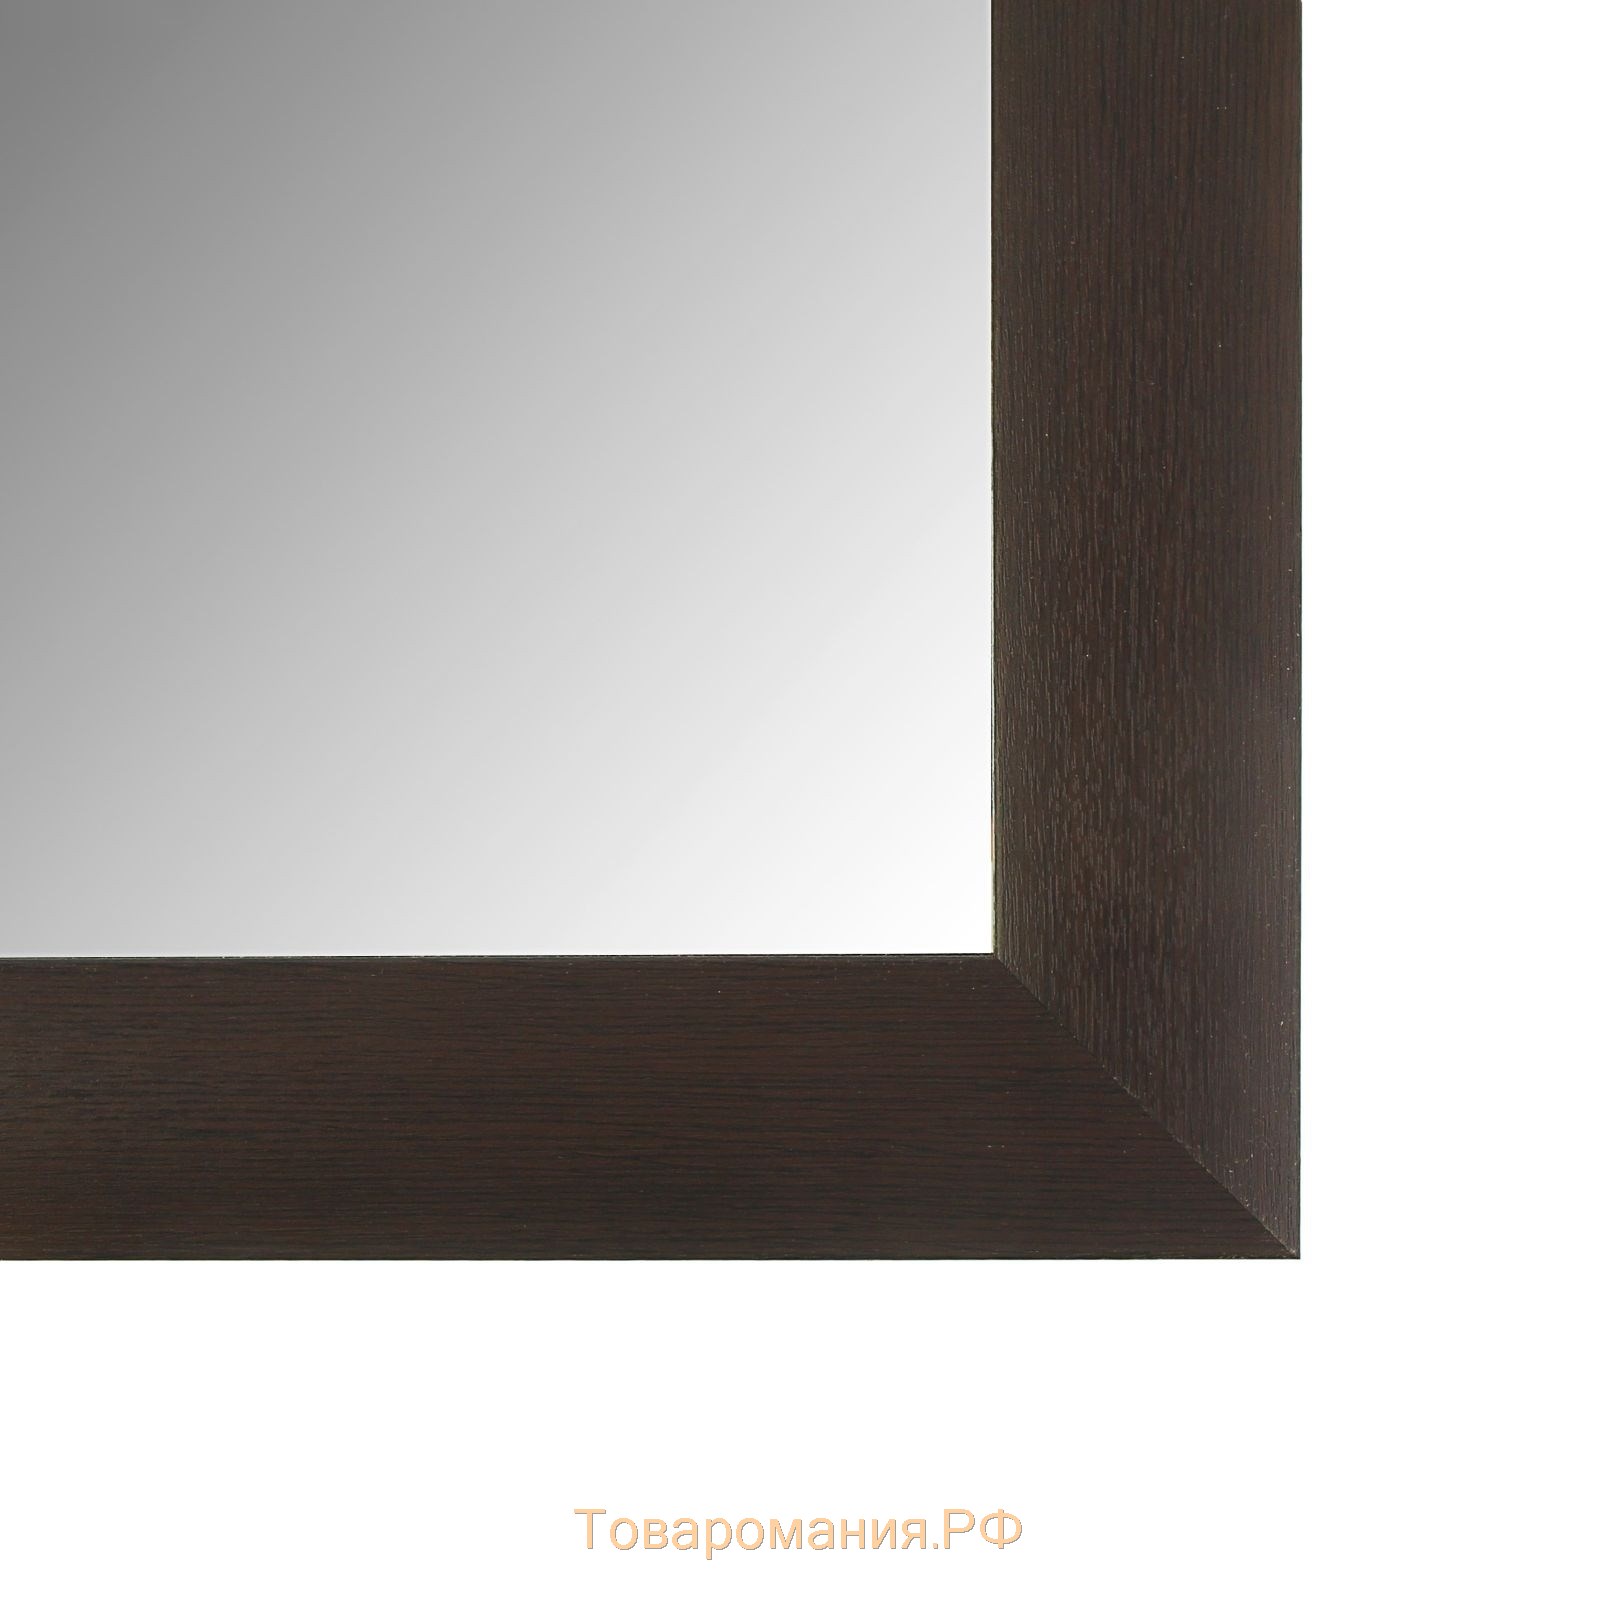 Зеркало «Венге»,  настенное 41×61 см, рама МДФ, 55 мм